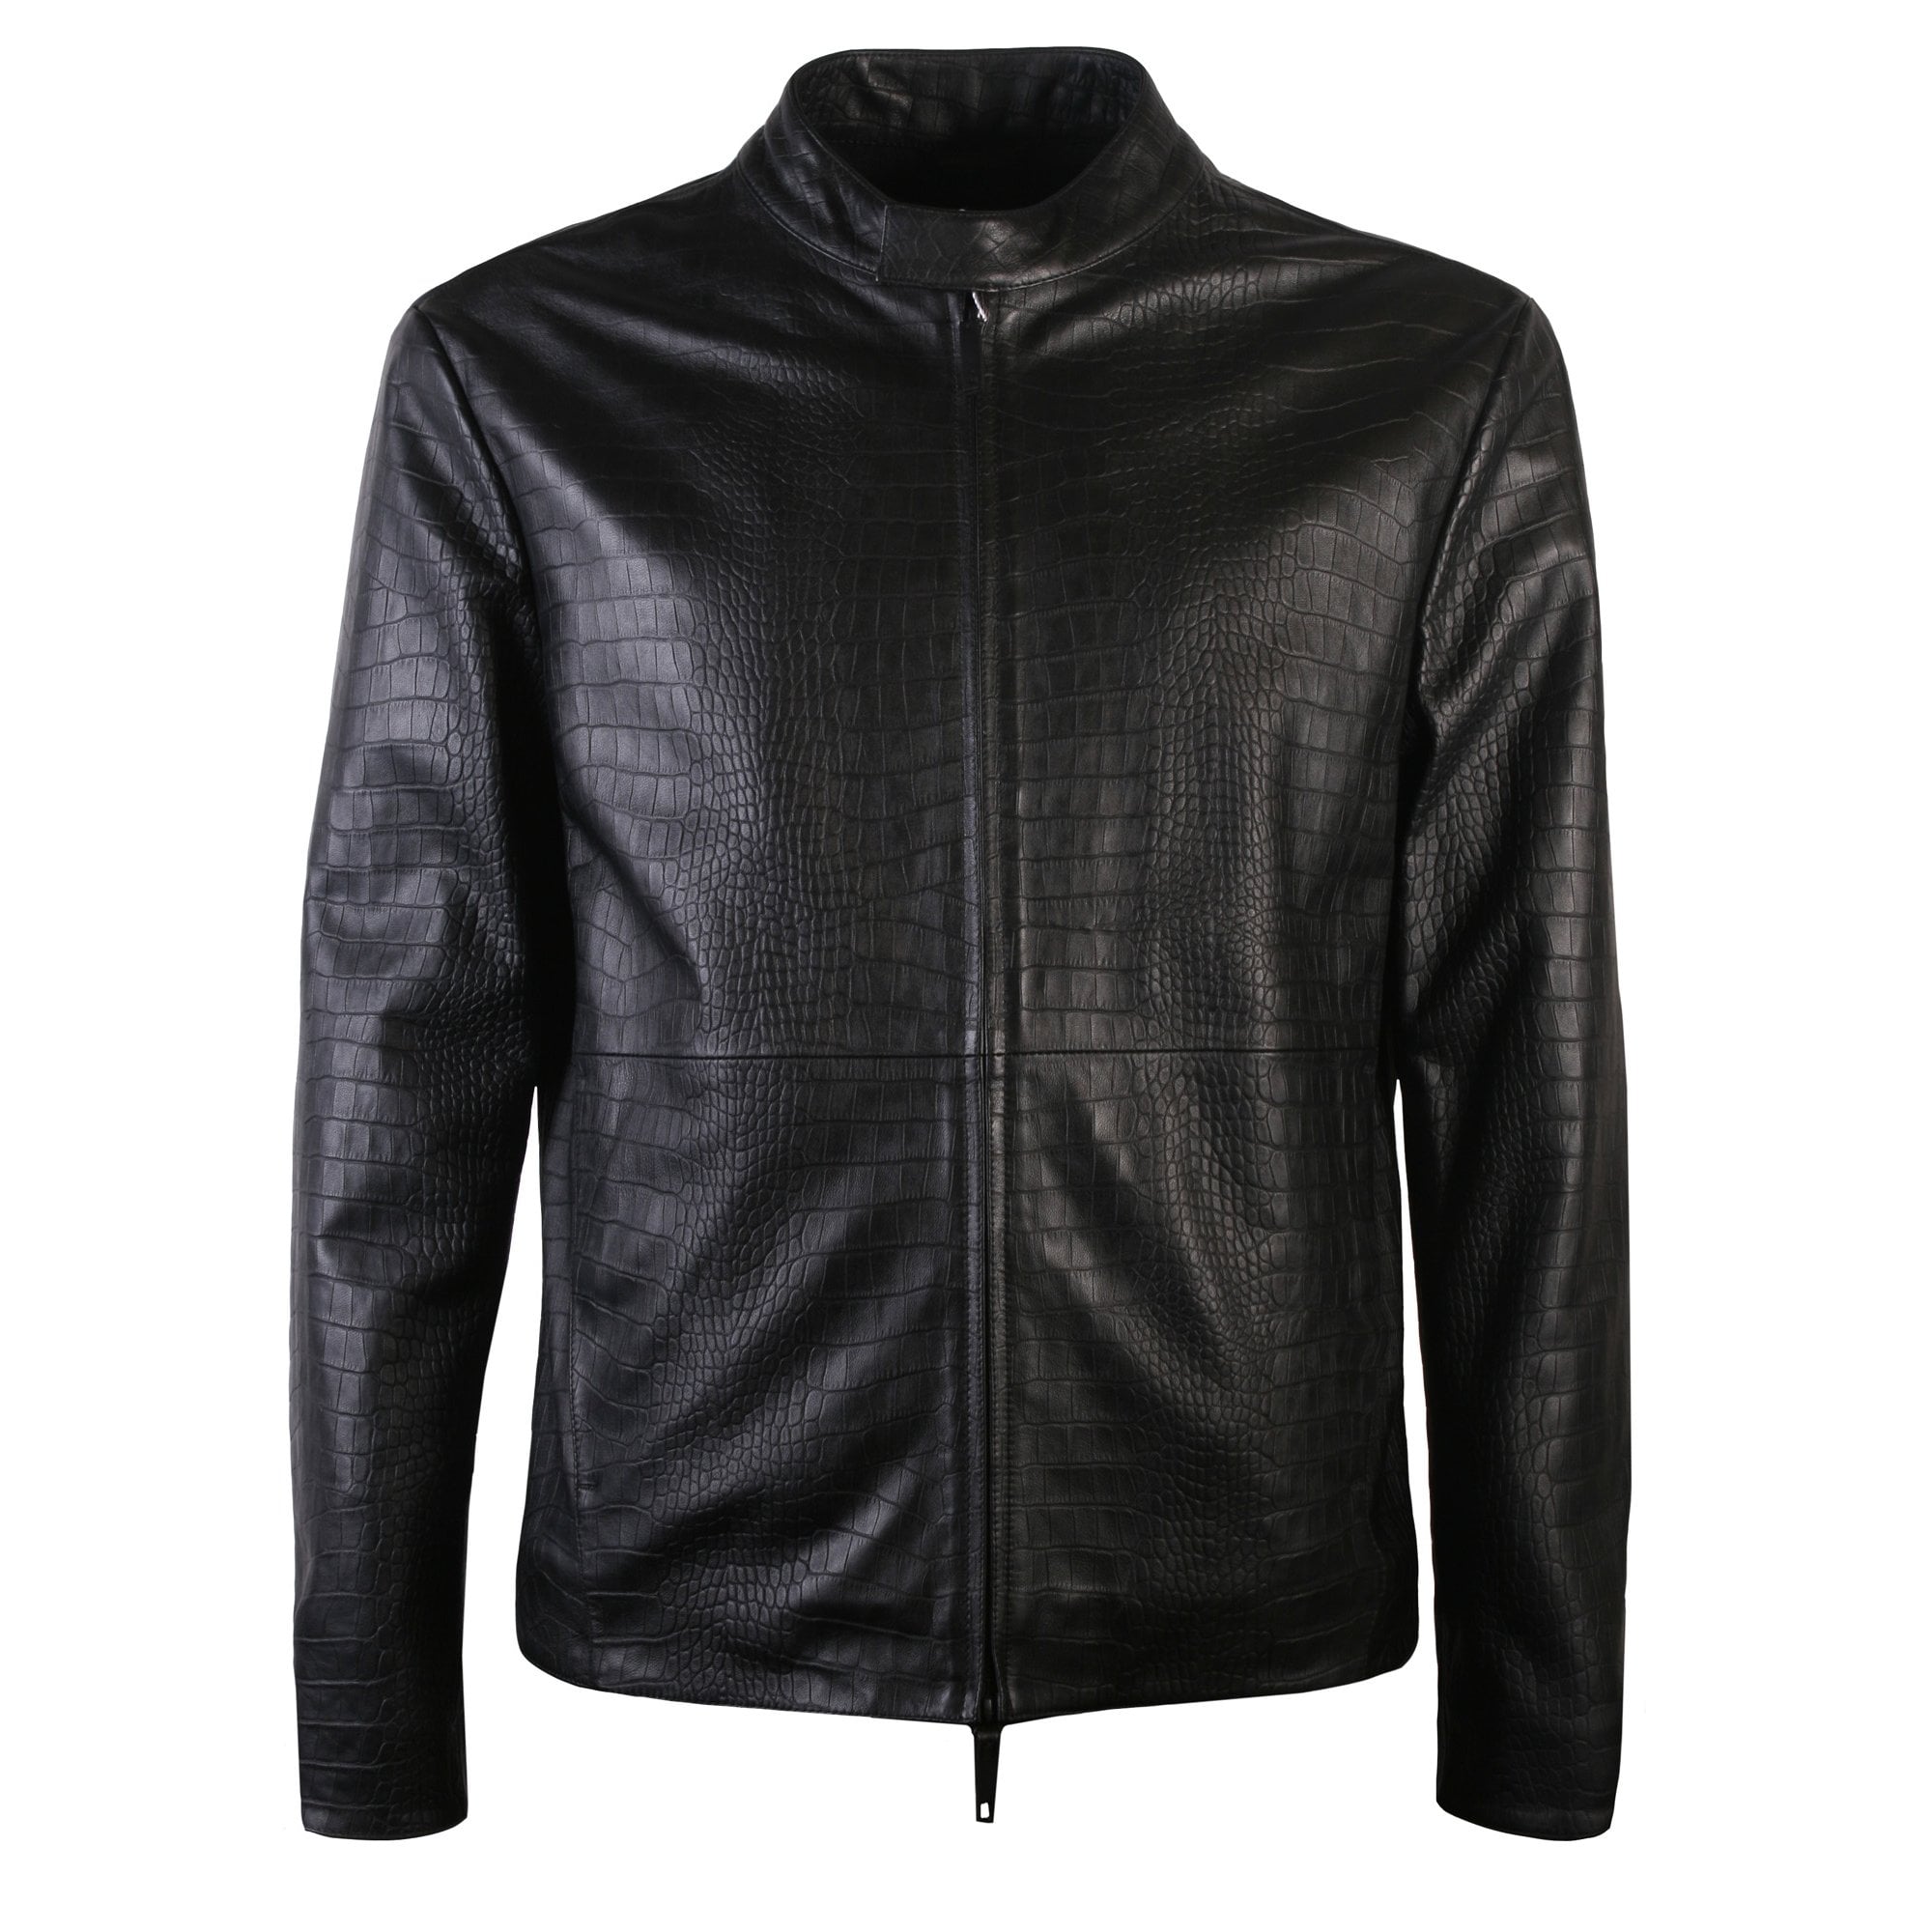 Armani Leather Jackets Mens Online | website.jkuat.ac.ke